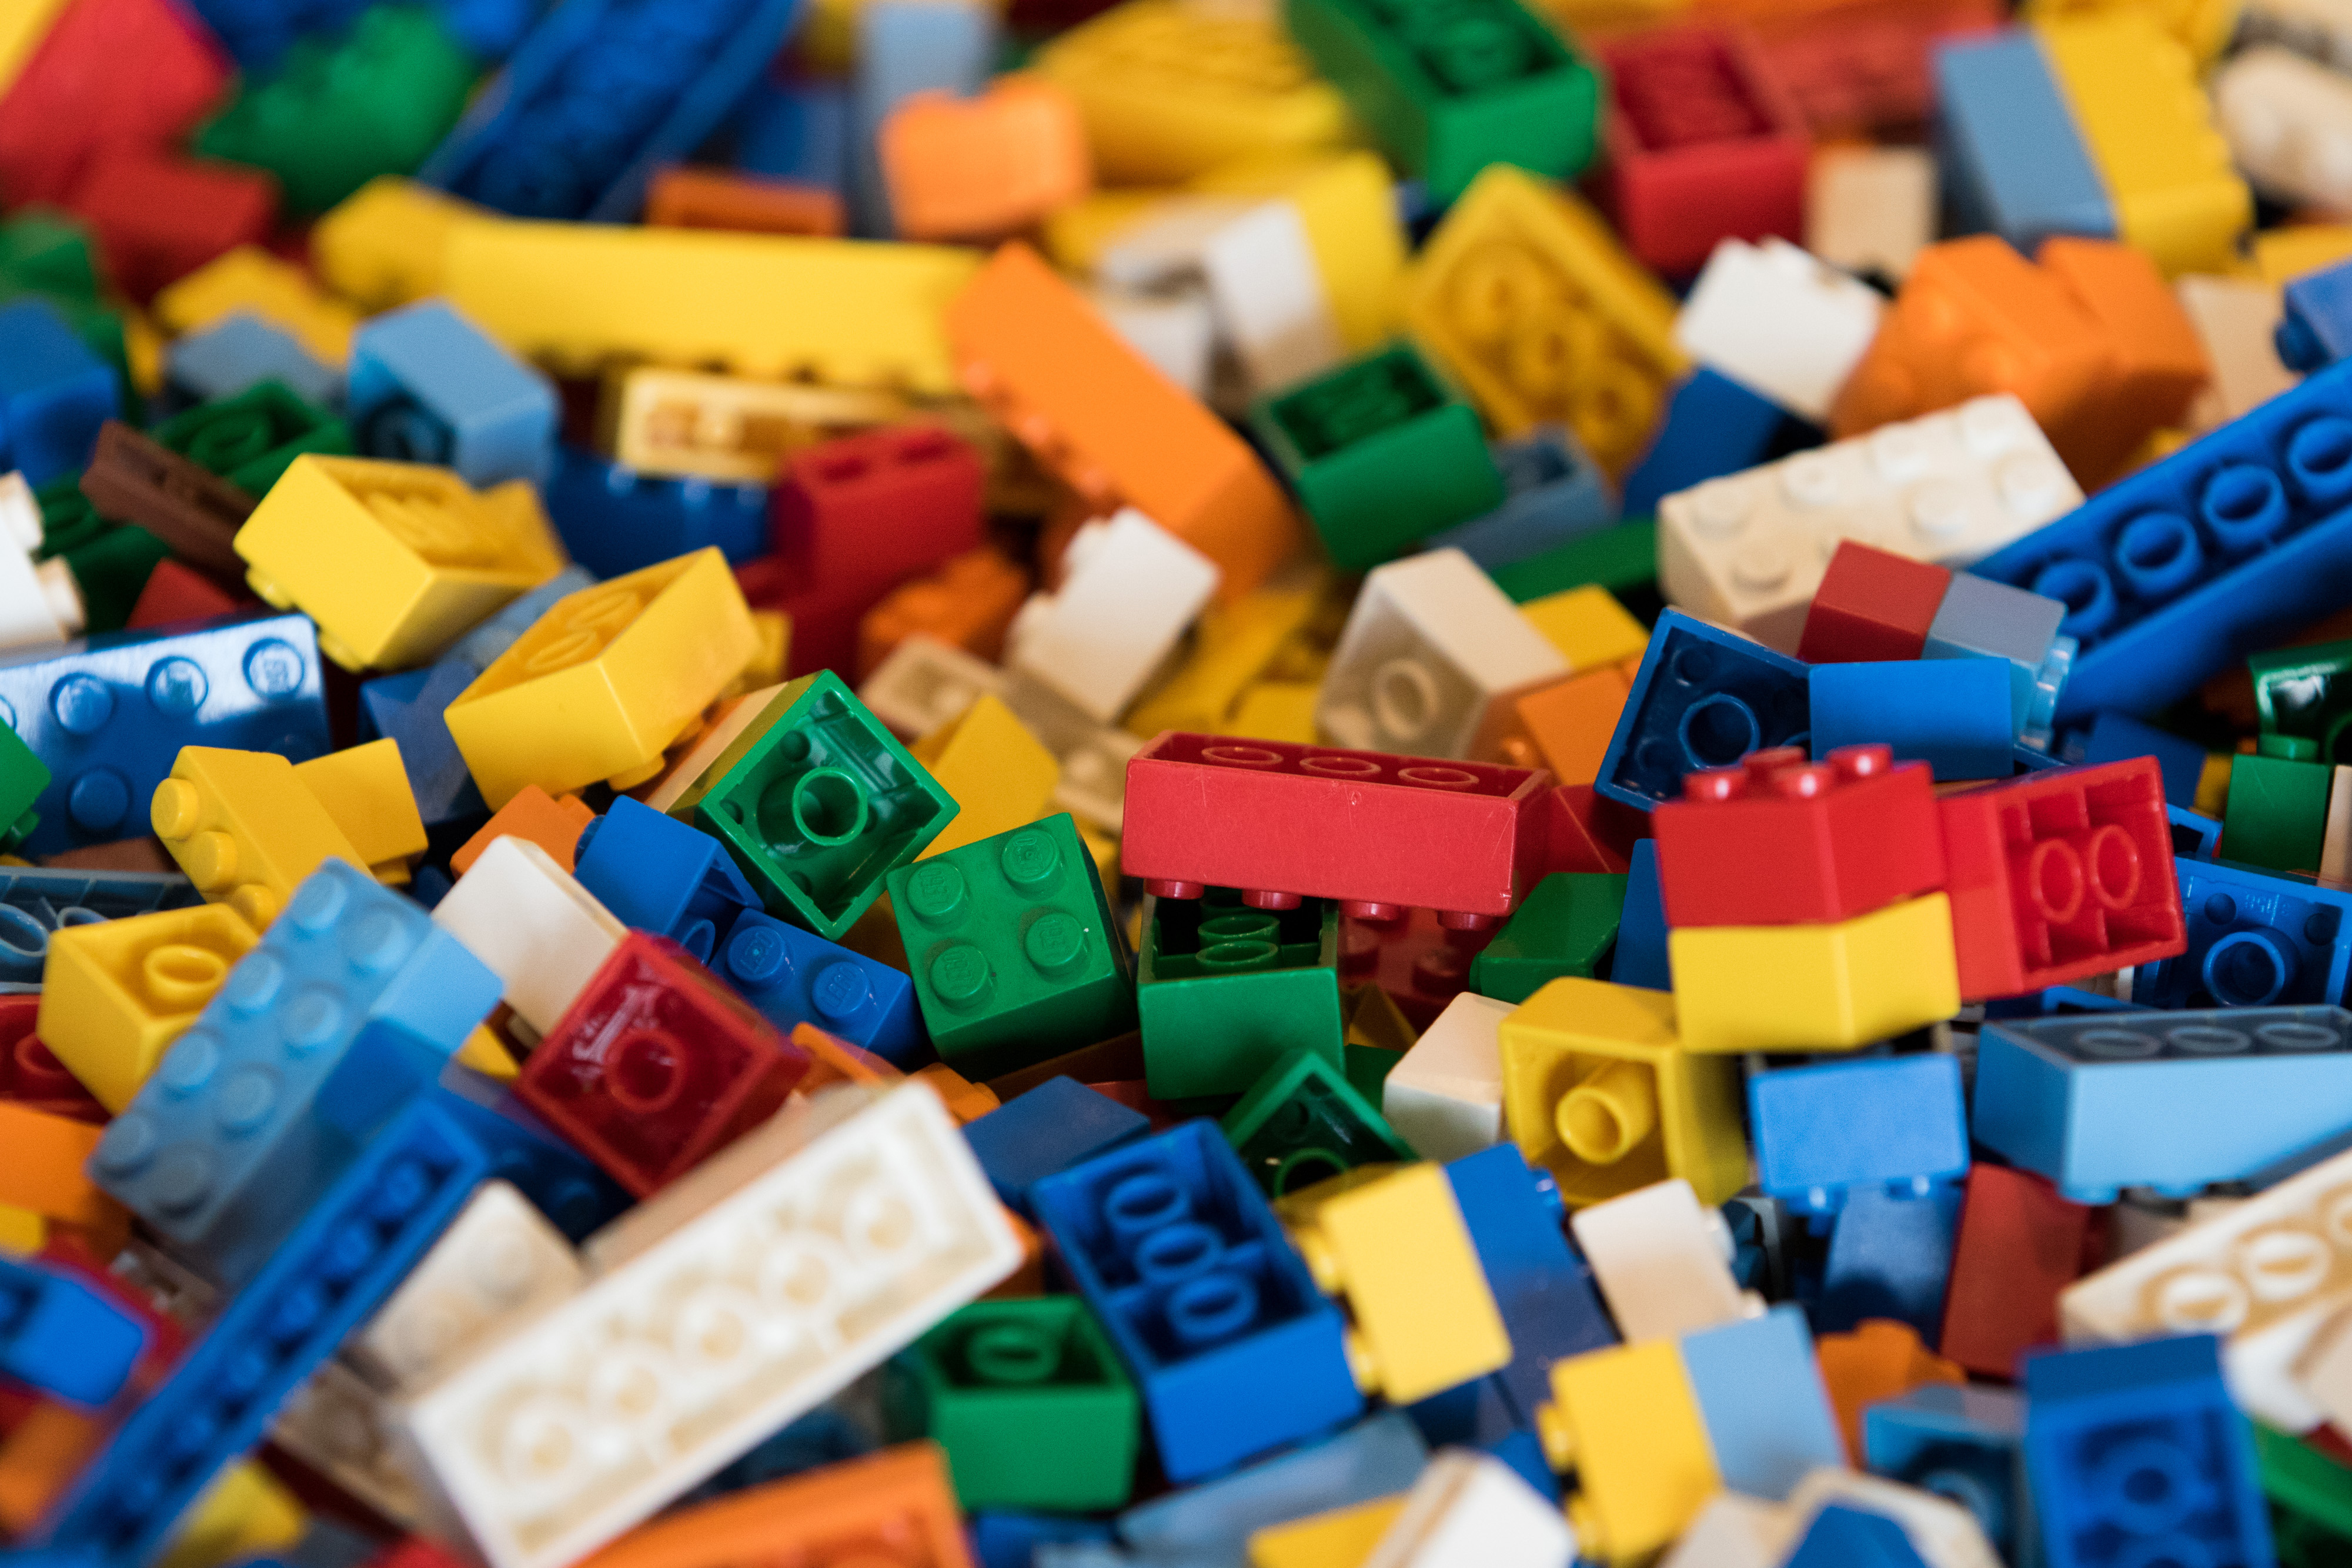 lego look alike blocks